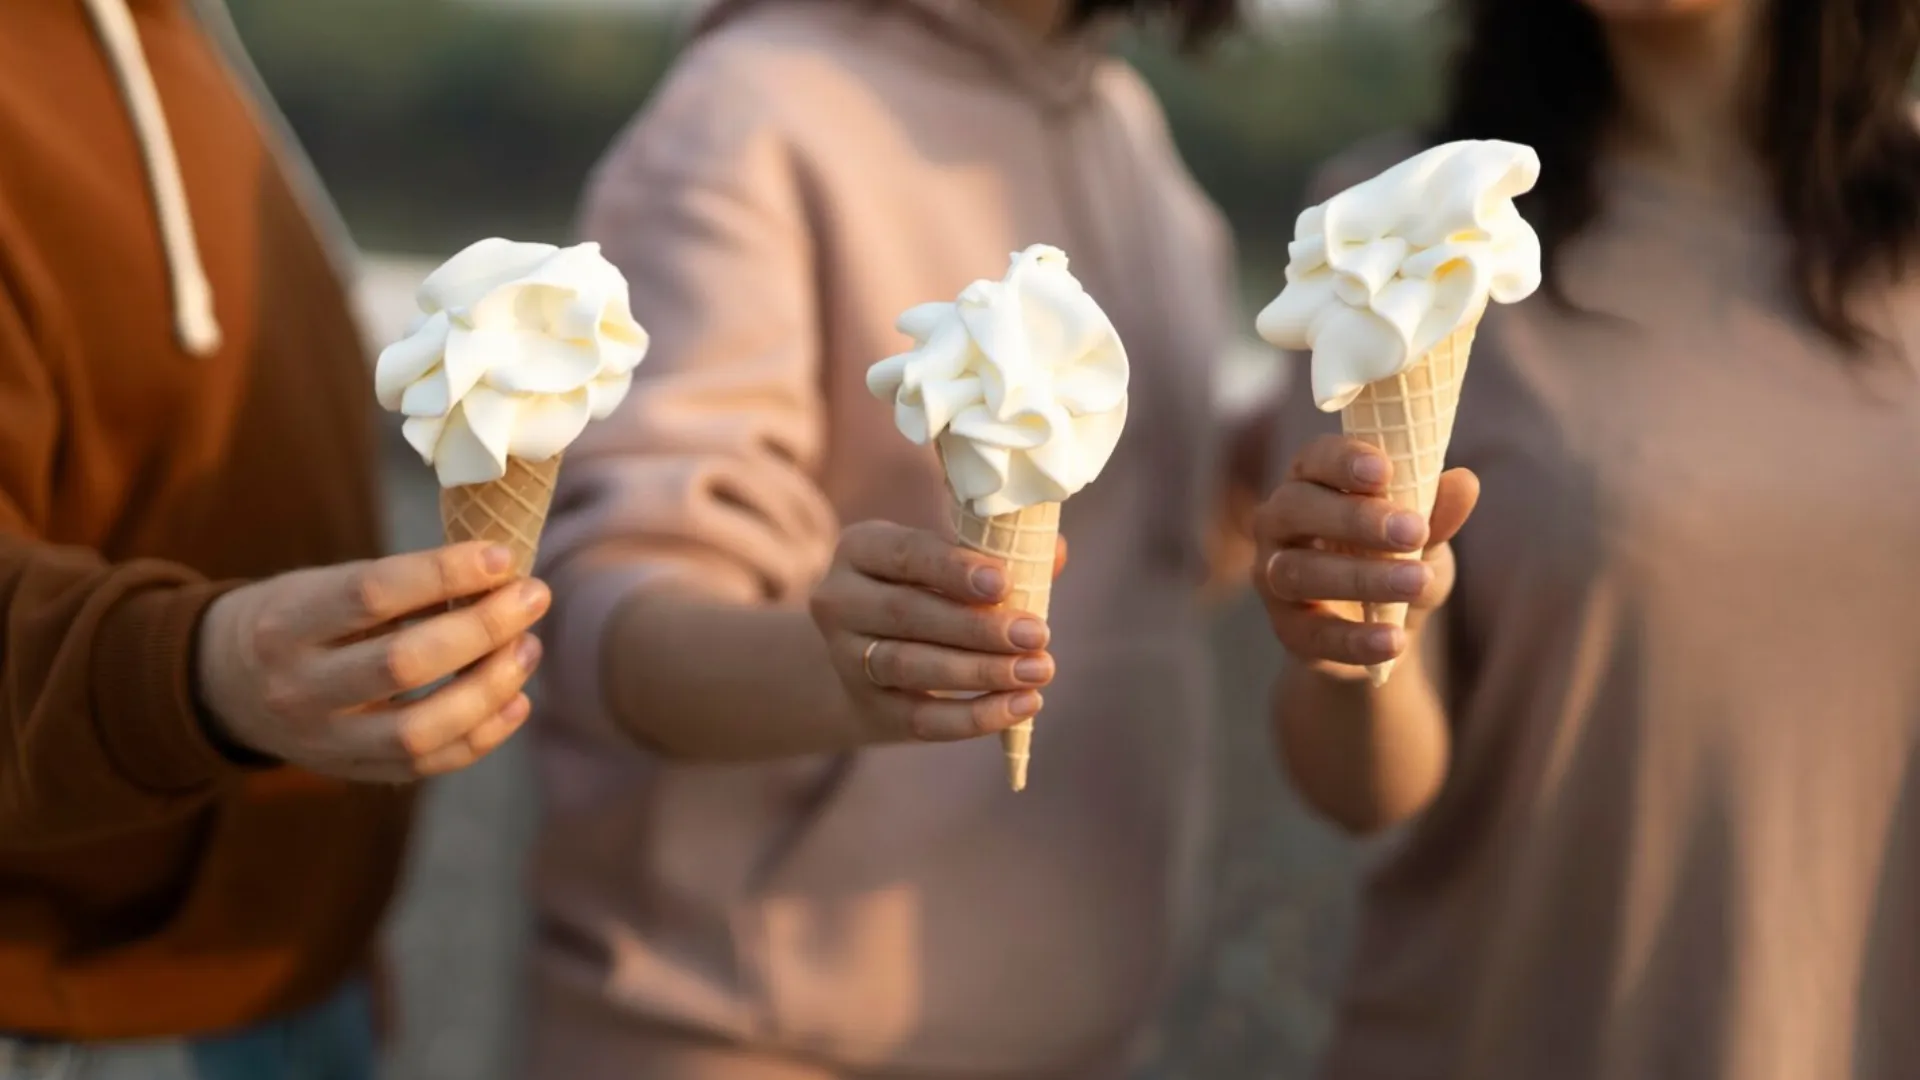 Вредит фигуре и здоровью: Развеяны 4 популярных мифа о мороженом